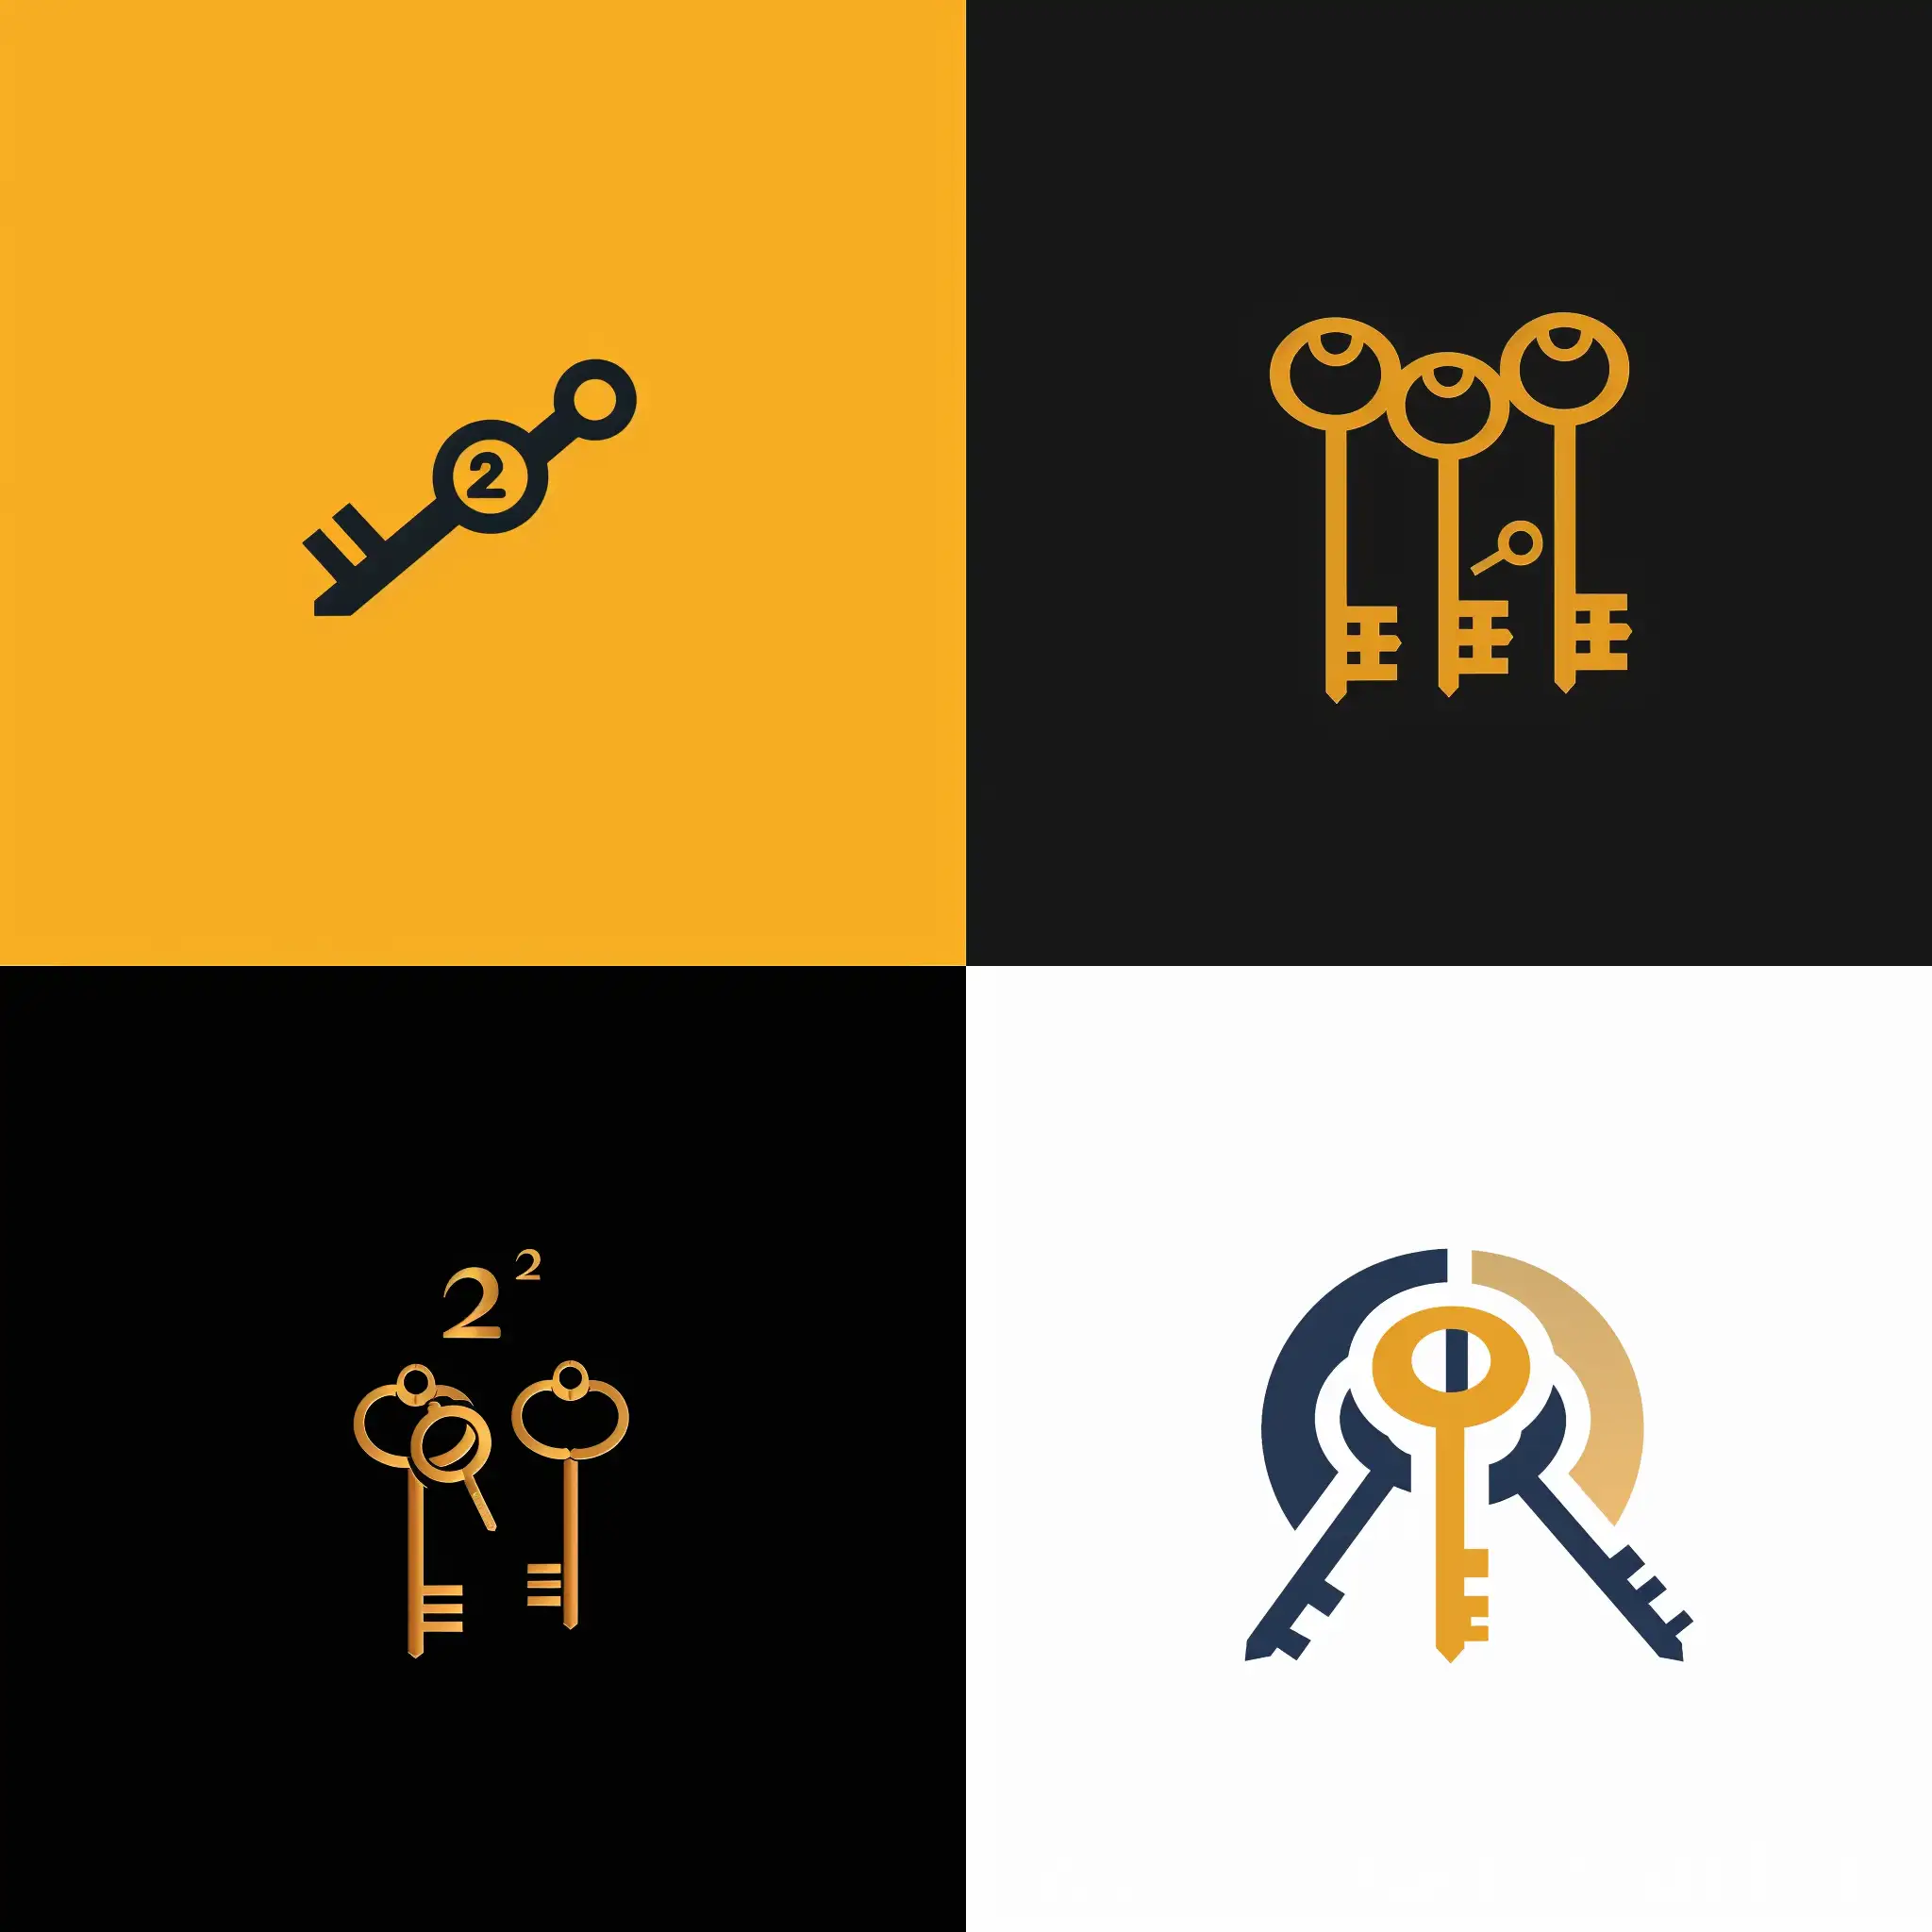 Erstelle mir ein Logo für eine performance Marketing Agentur namens Key2Marketing. Verwende dafür Schlüssel im Logo.